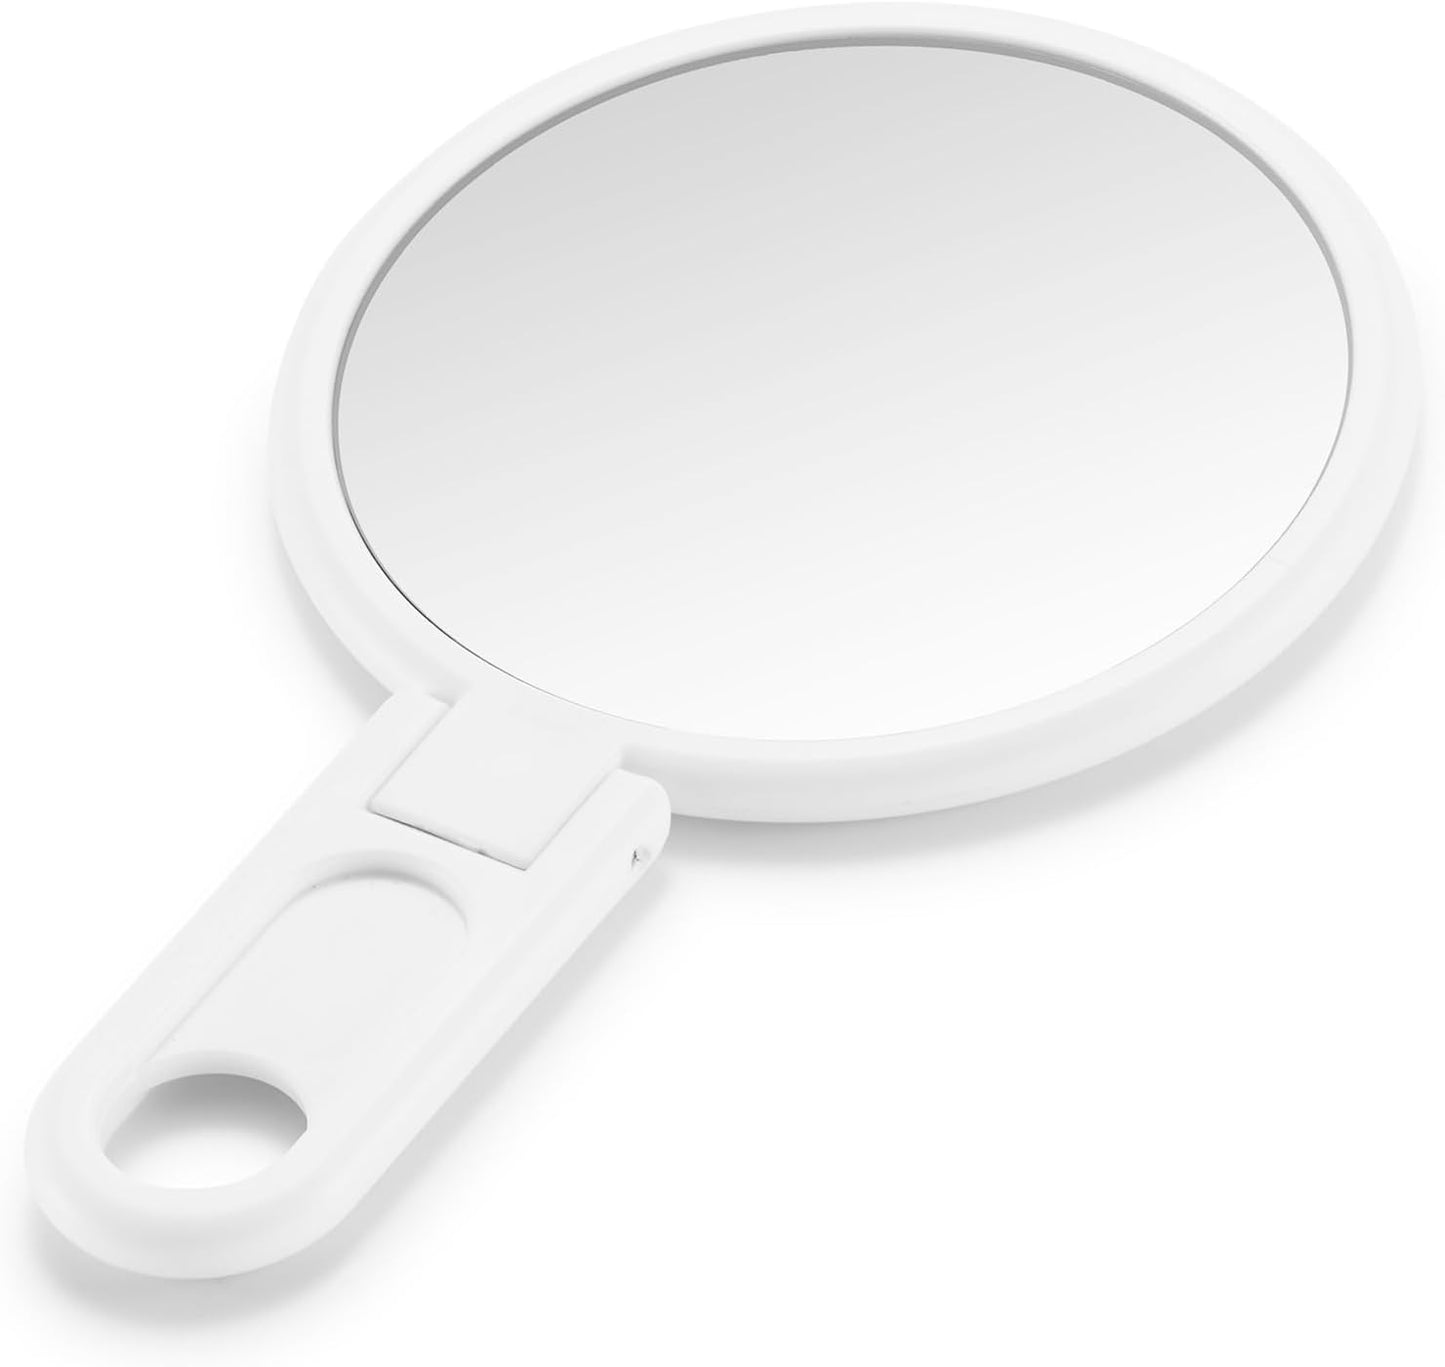 omirodirect mini foldable mirror white